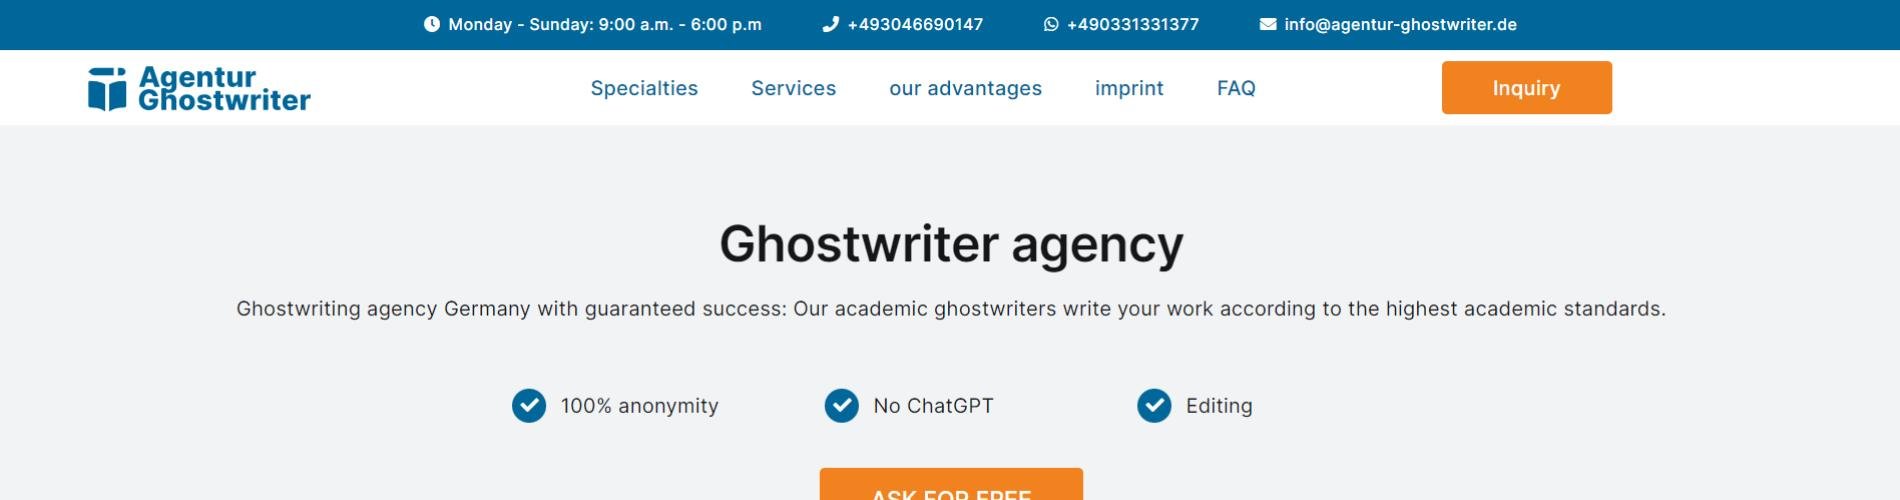 Agentur Ghostwriter cover